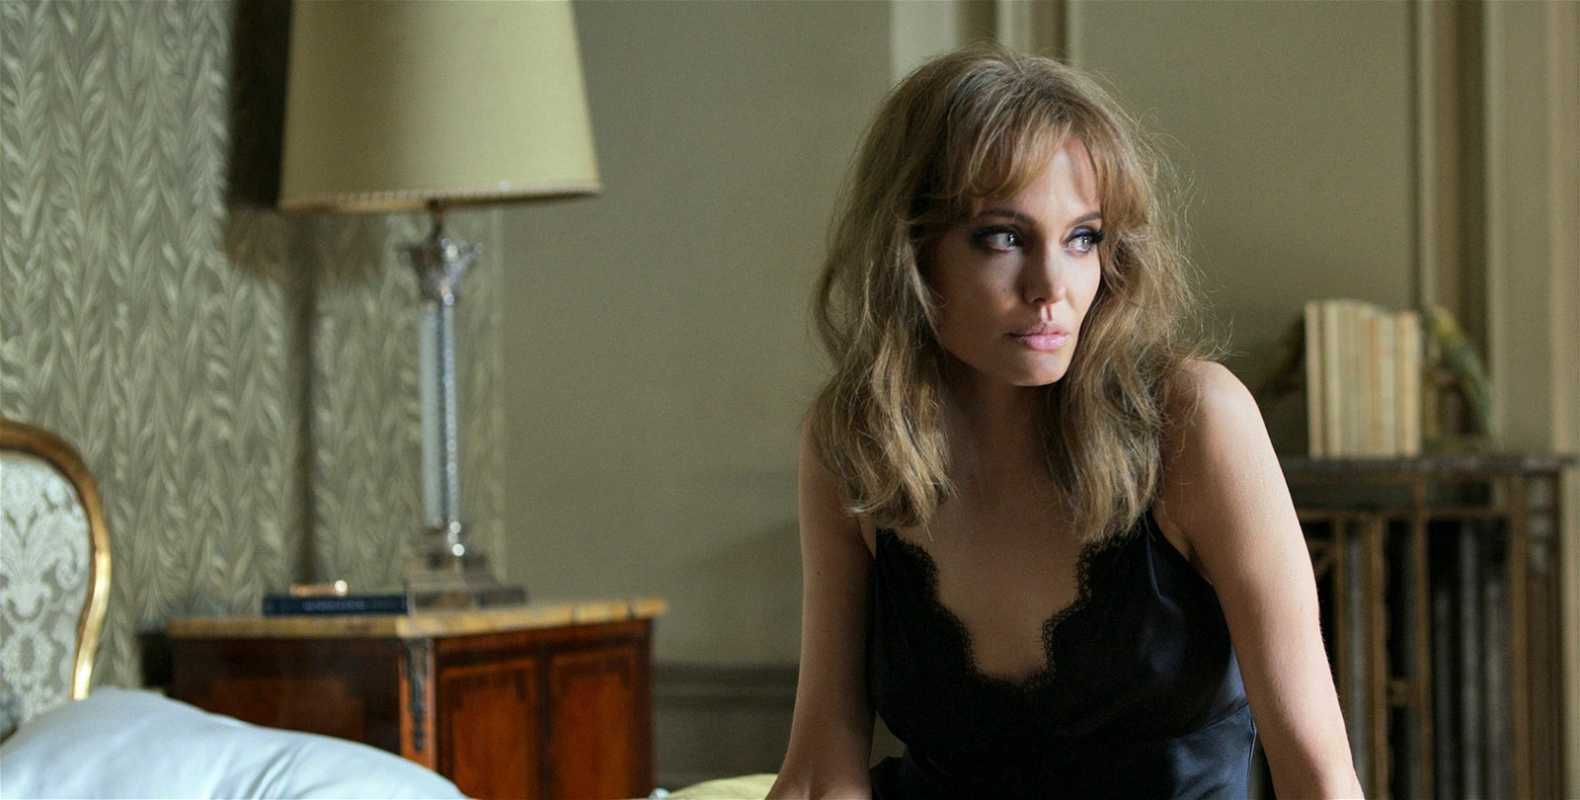 Påstod Billy Bob Thornton at S*x med Angelina Jolie var så ille at det er som å knulle sofaen?